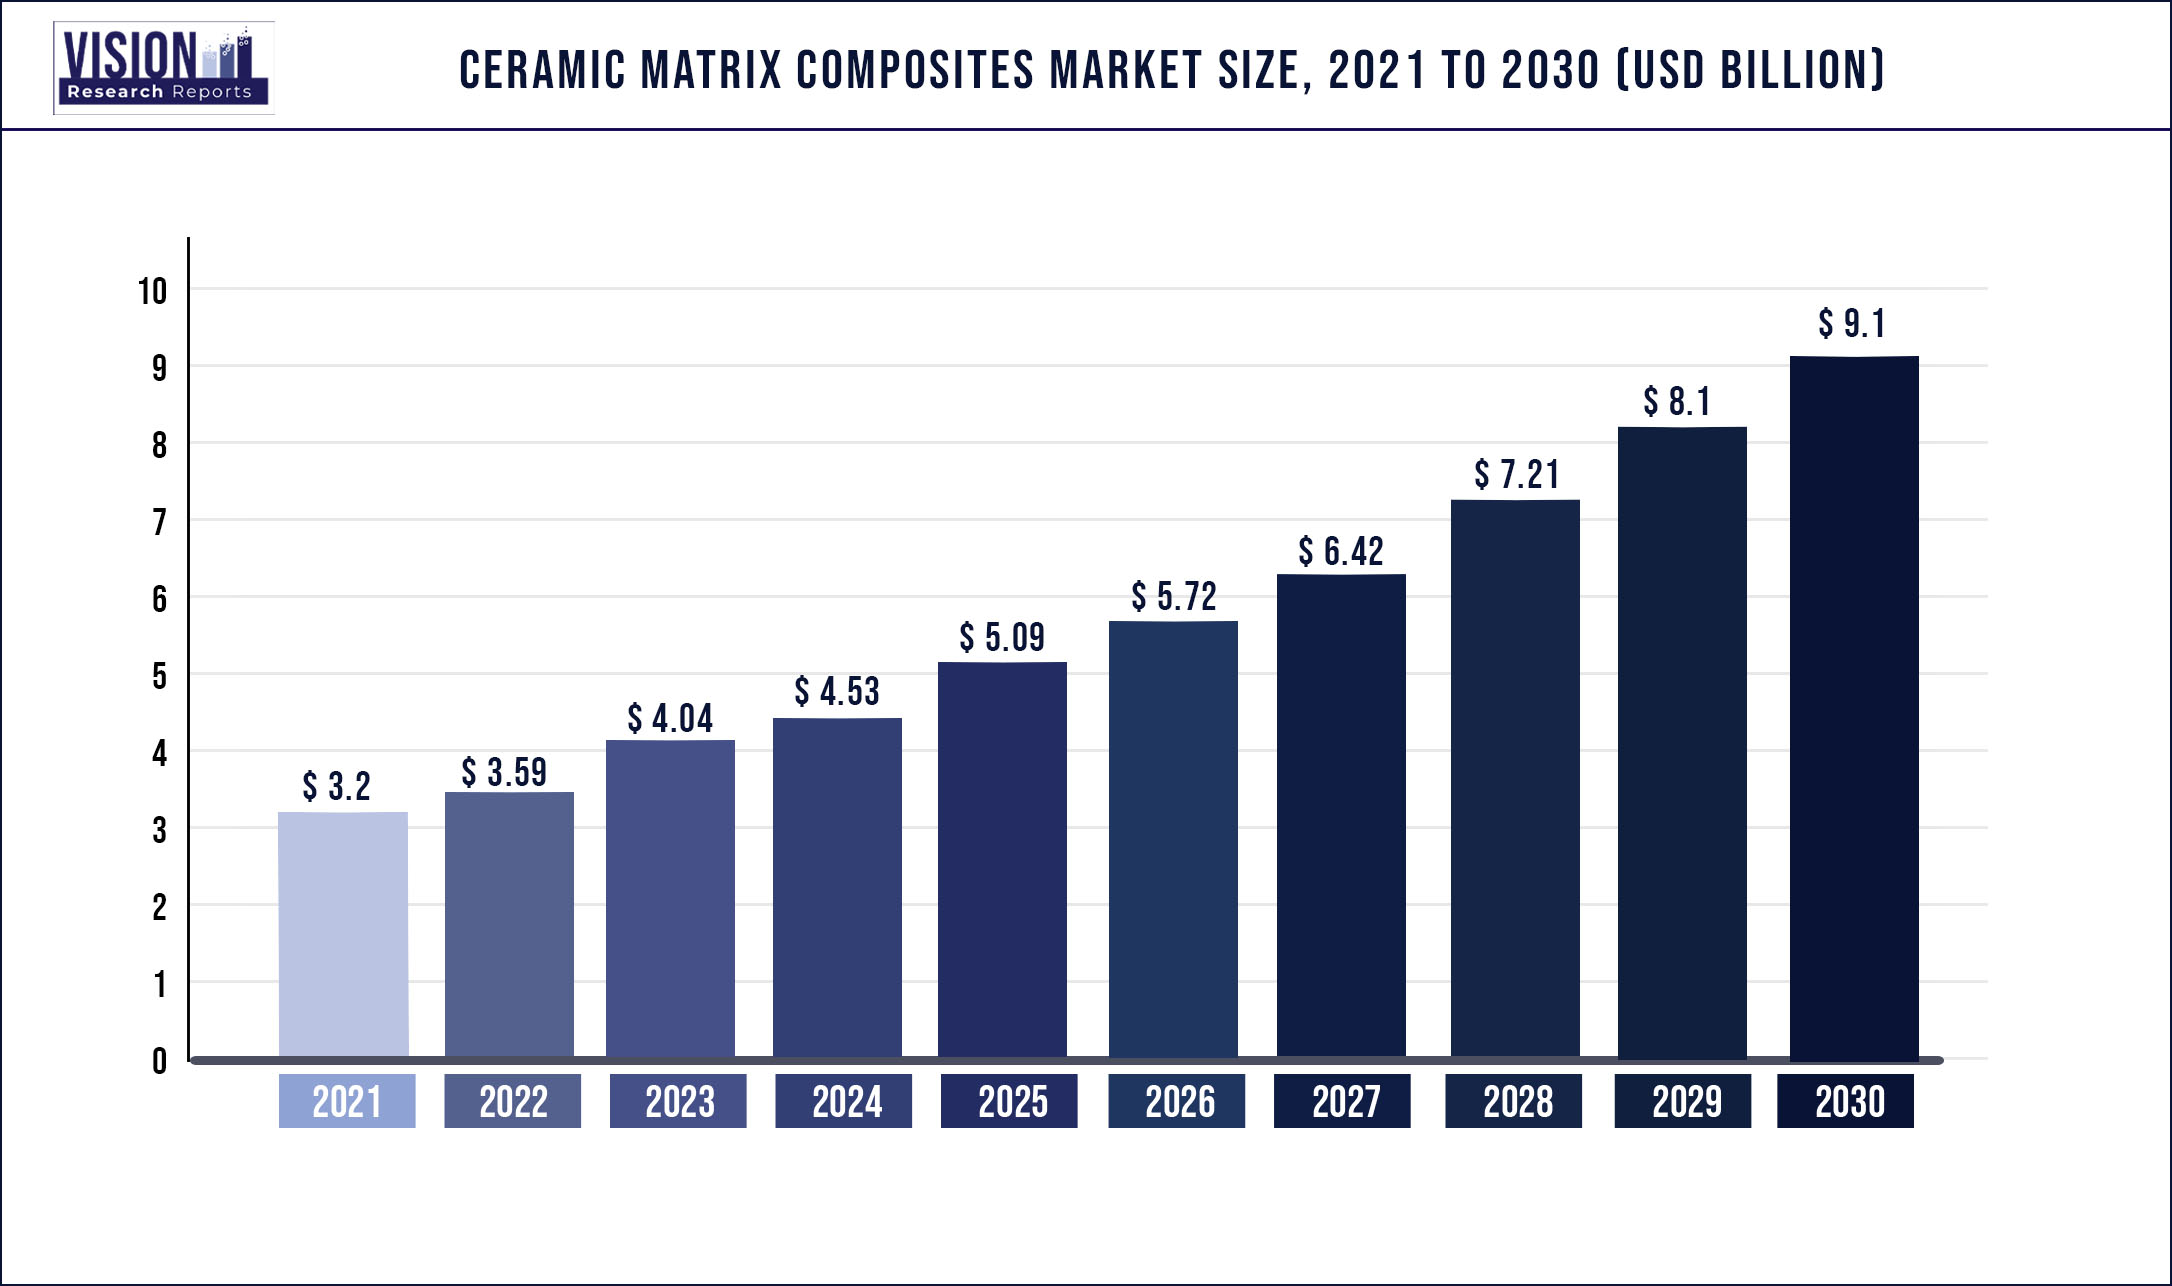 Ceramic Matrix Composites Market Size 2021 to 2030